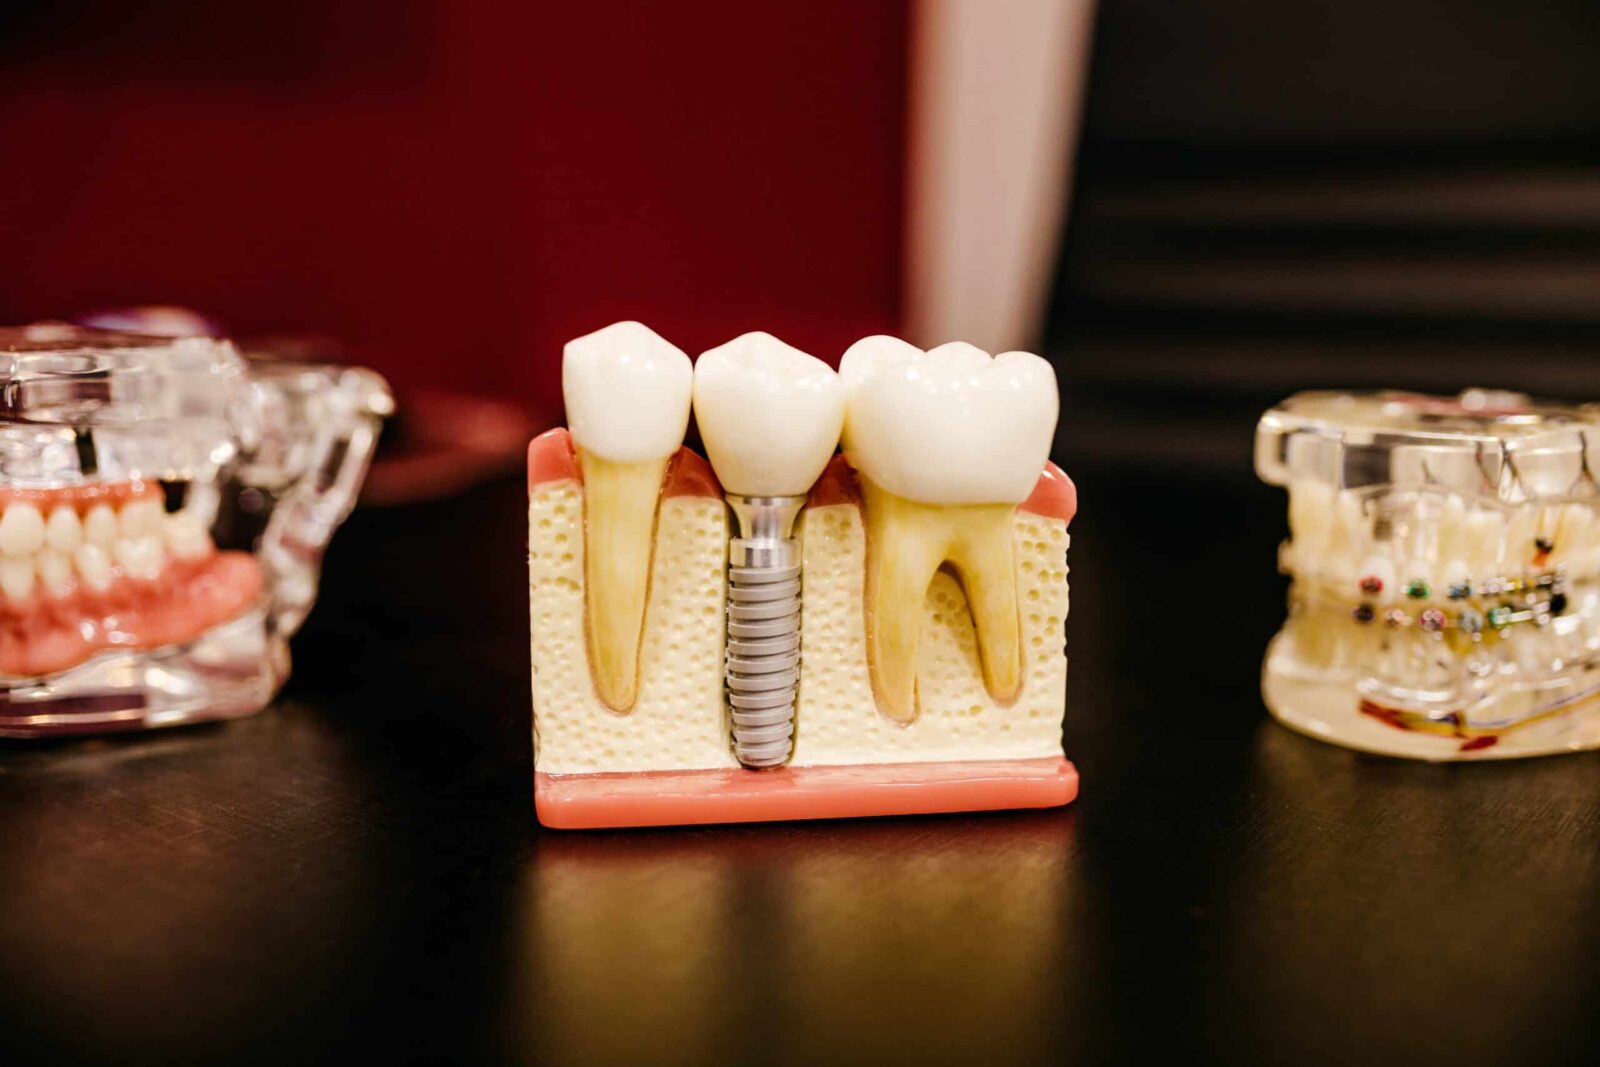 Имплантация зубов: плюсы и минусы